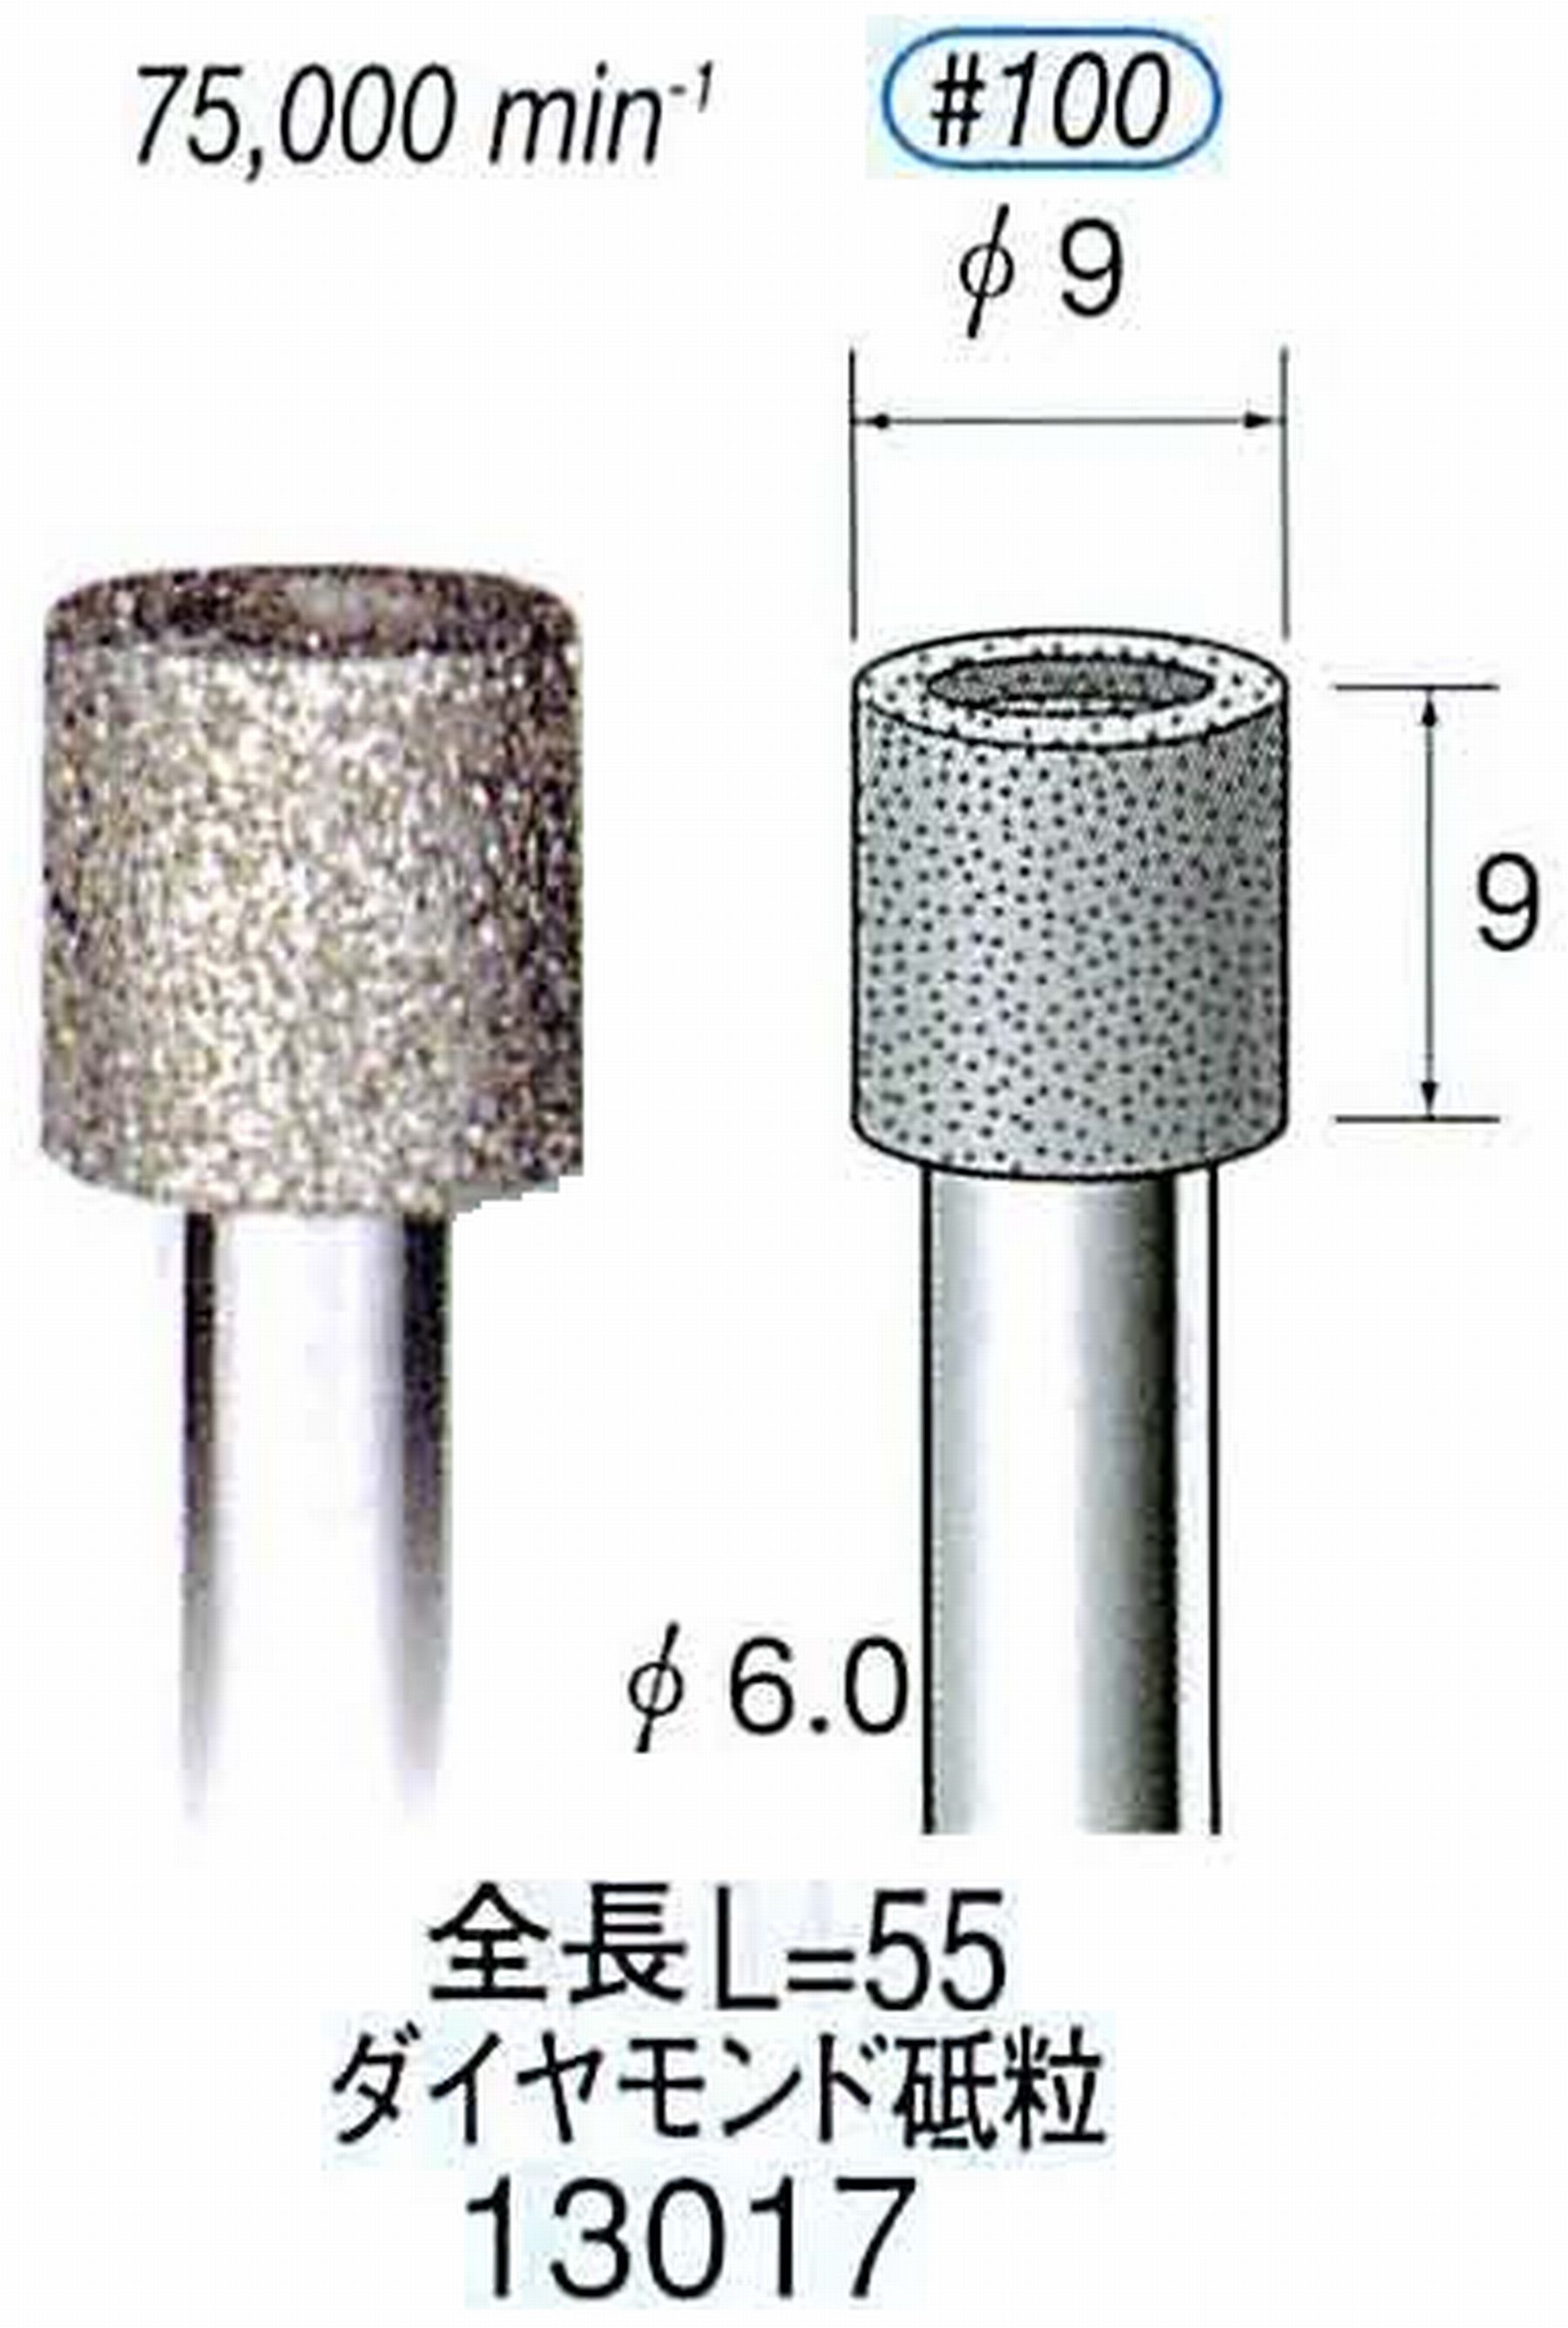 ナカニシ/NAKANISHI 電着ダイヤモンド ダイヤモンド砥粒 軸径(シャンク)φ6.0mm 13017